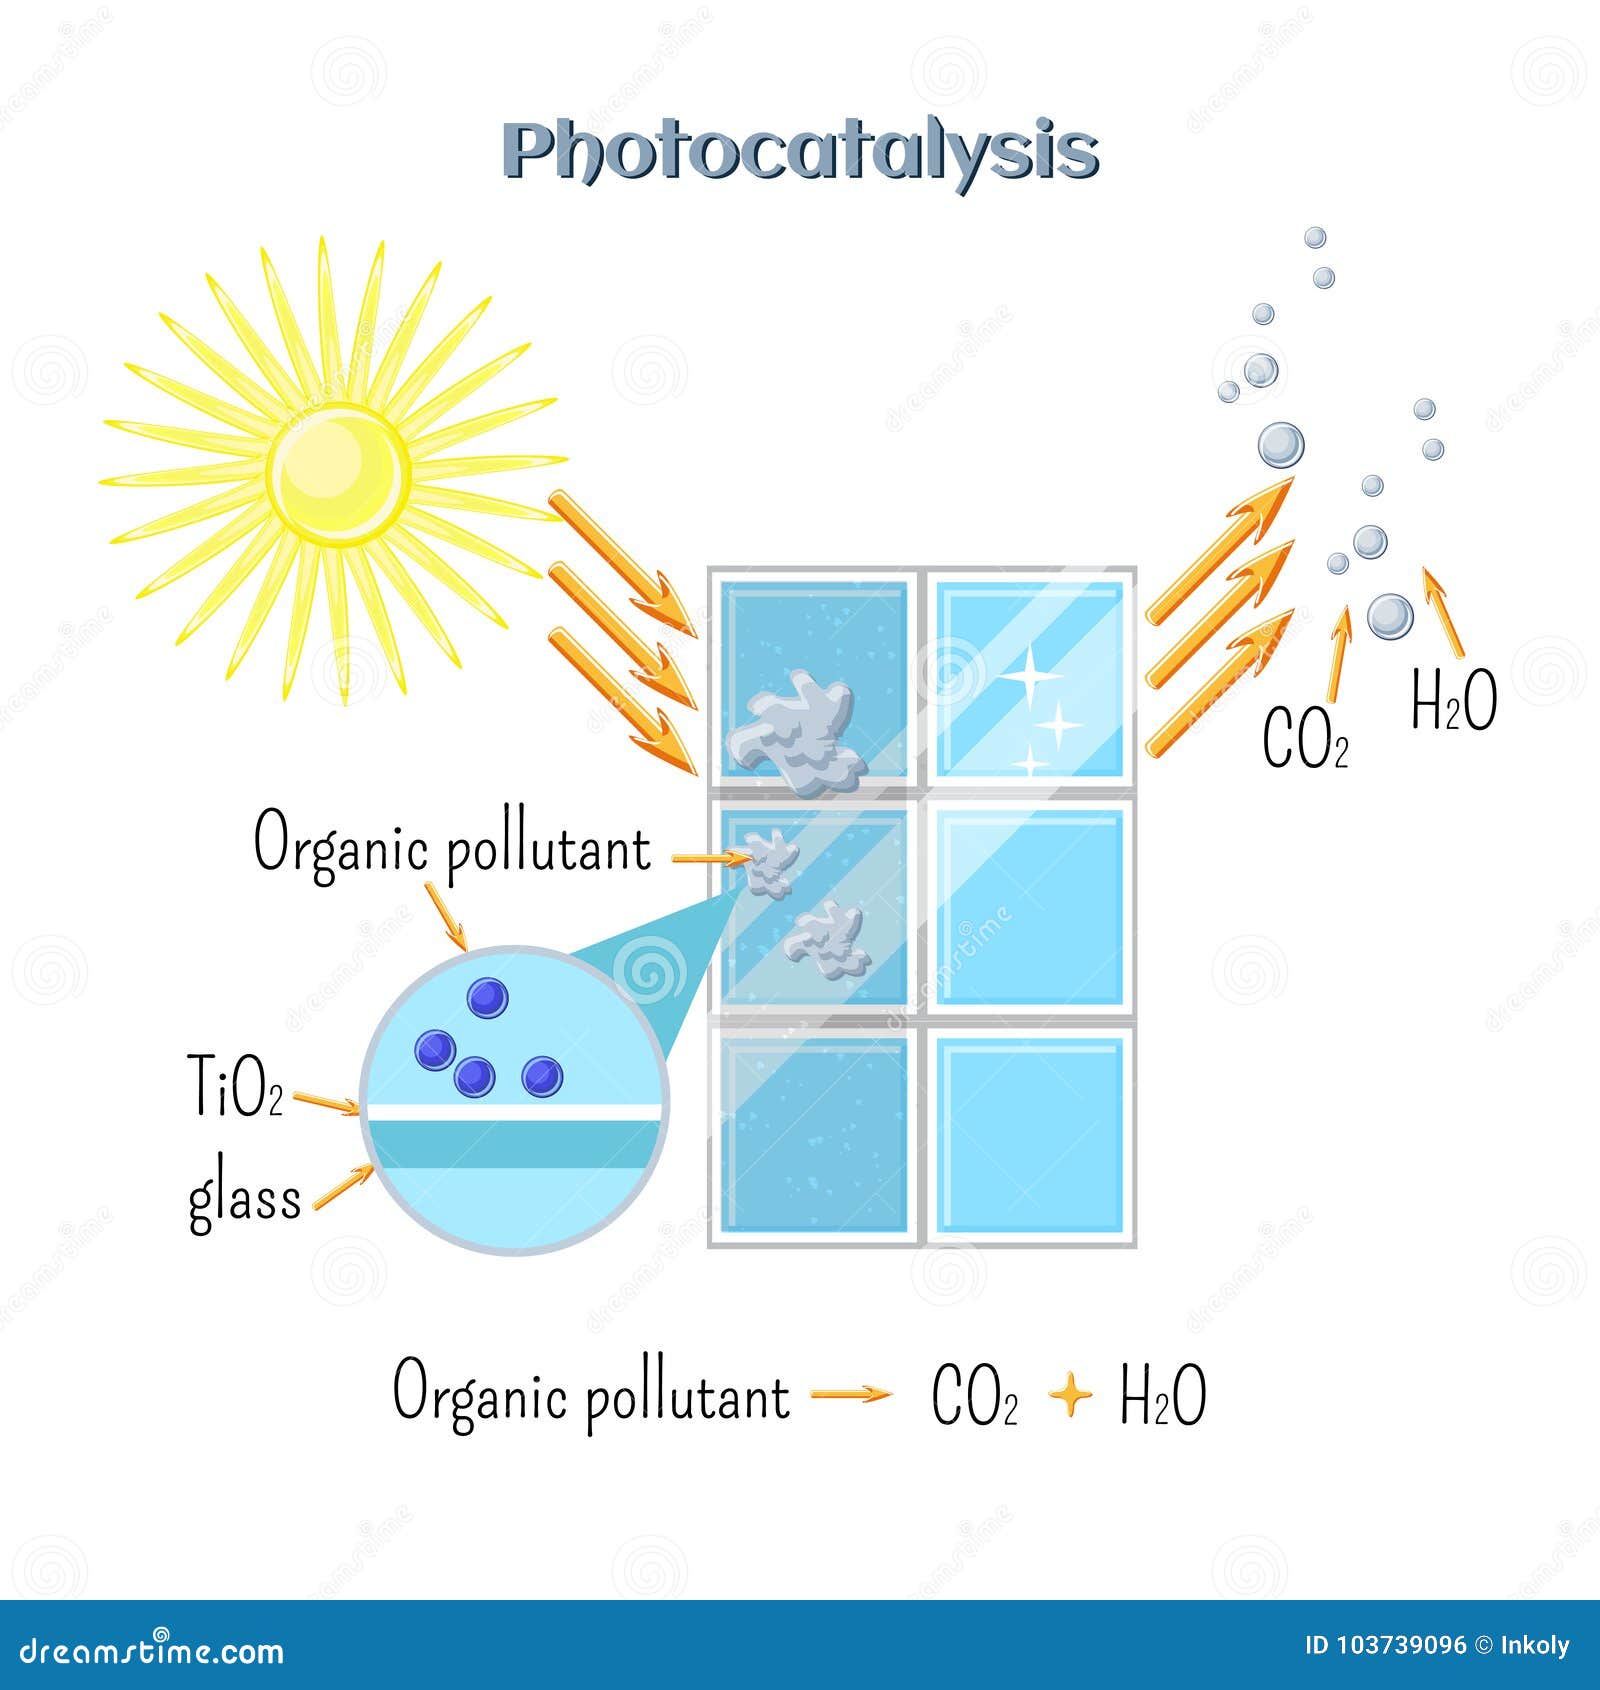 photocatalysis - titanium oxide catalyst under uv radiation activate organic pollutant decomposition.